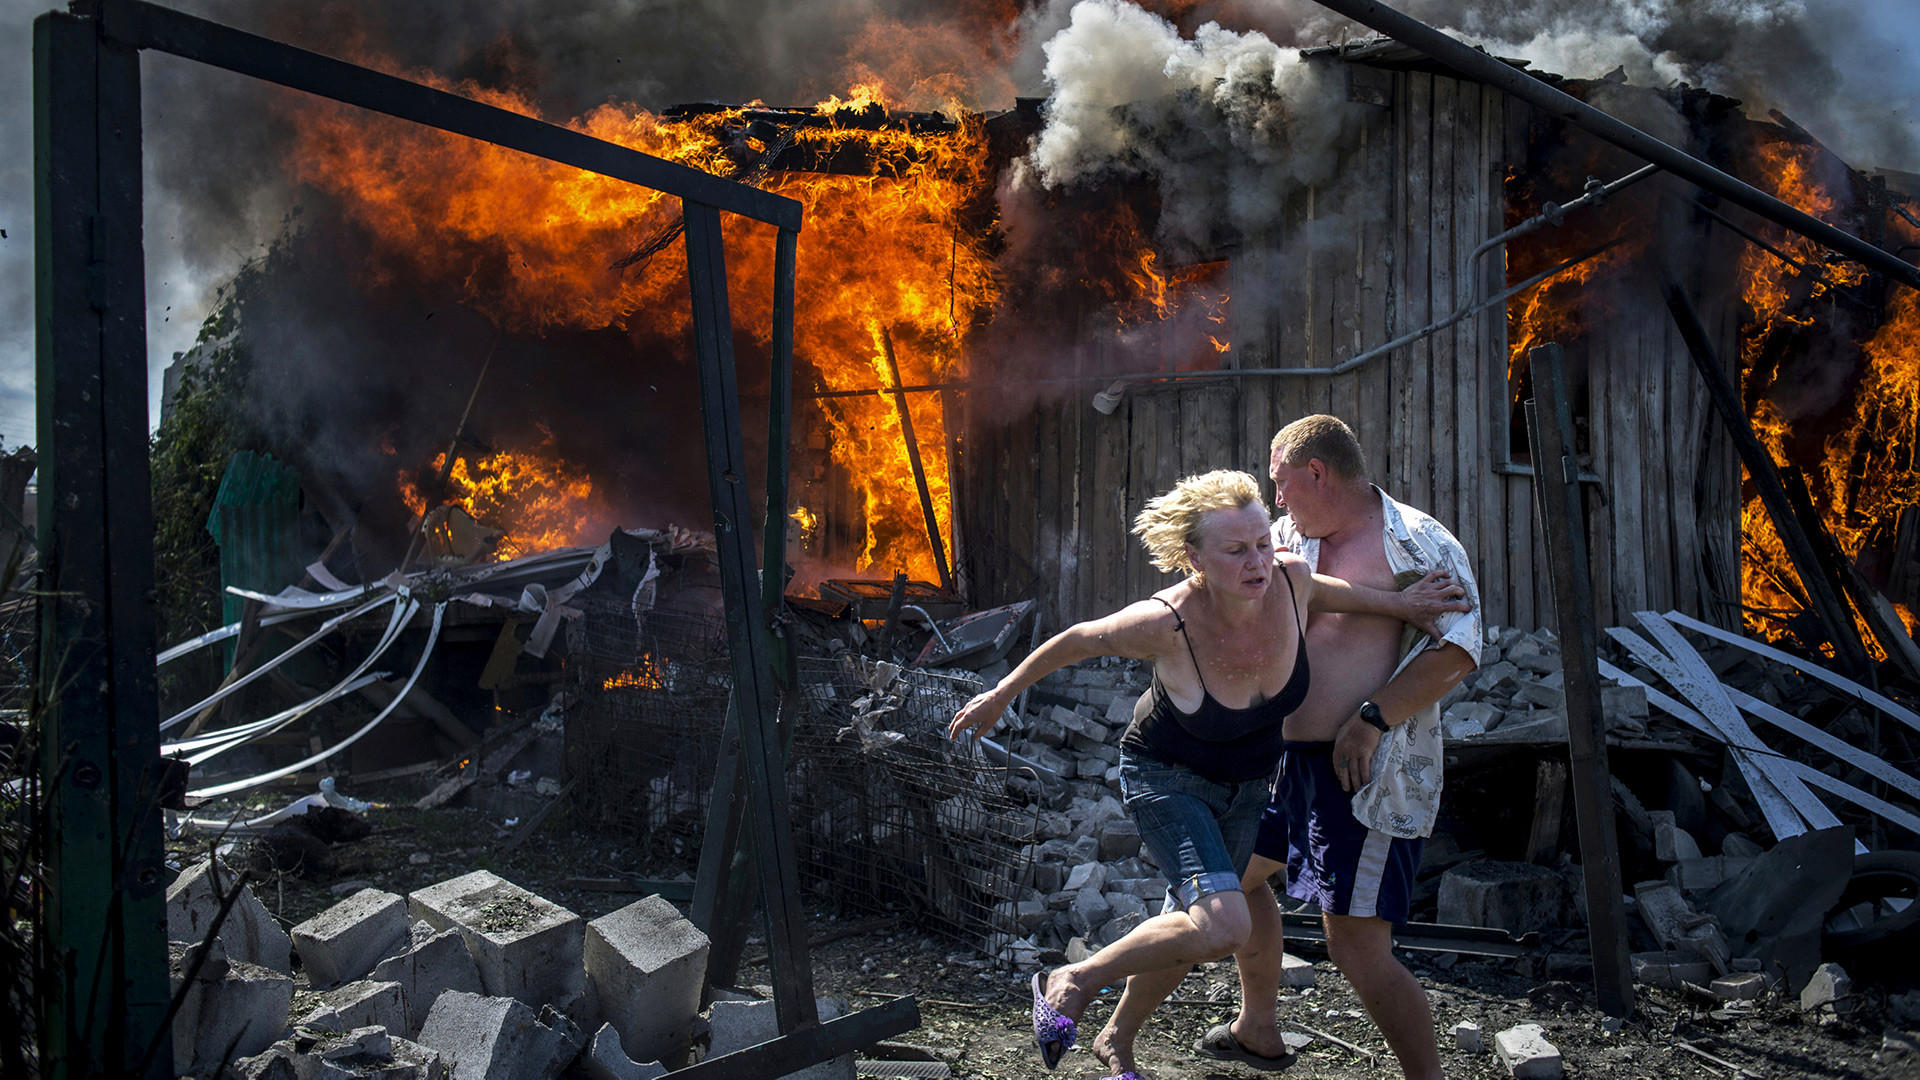 Фото &copy; Valery Melnikov, Rossiya Segodnya/Courtesy of World Press Photo Foundation/Handout via REUTERS